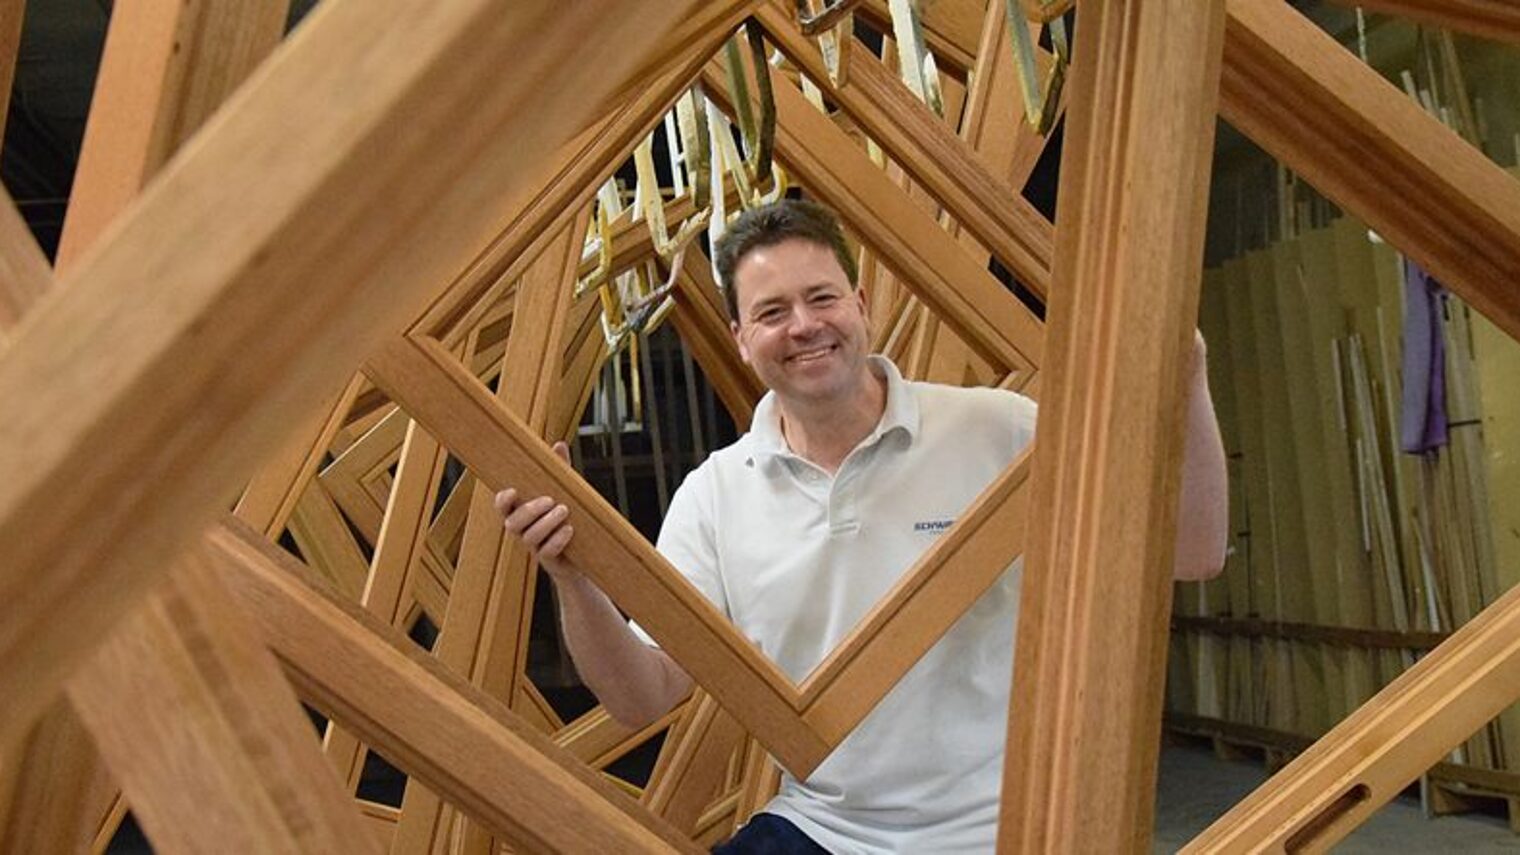 Thilo Schwarz leitet das gleichnamige, 1624 gegründete Fensterbauunternehmen aus Holzappel.